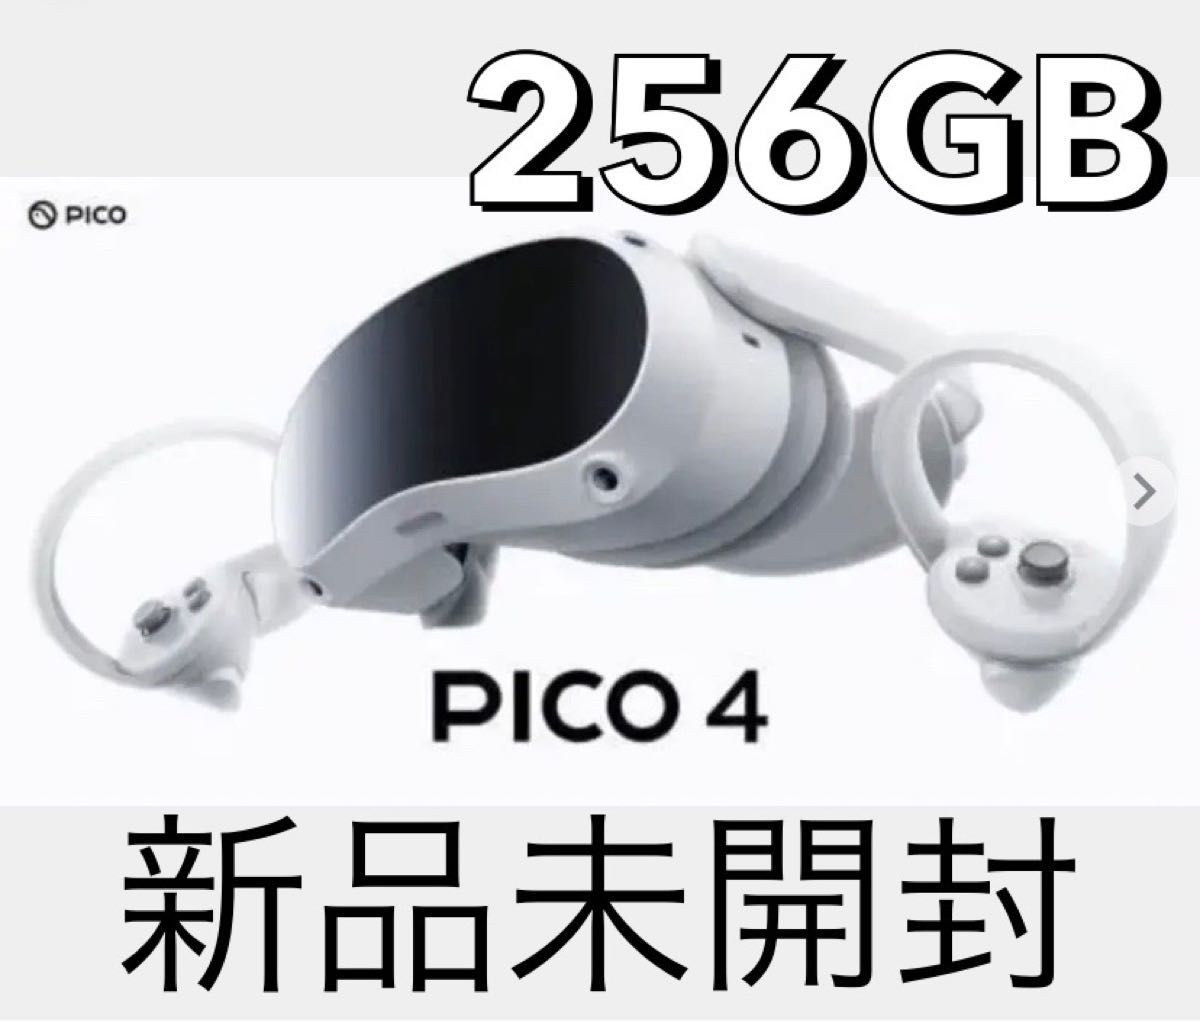 和風 【値下げ交渉可】PICO 4 256GB VR ヘッドセット (ピコ 4) | kdcow.com